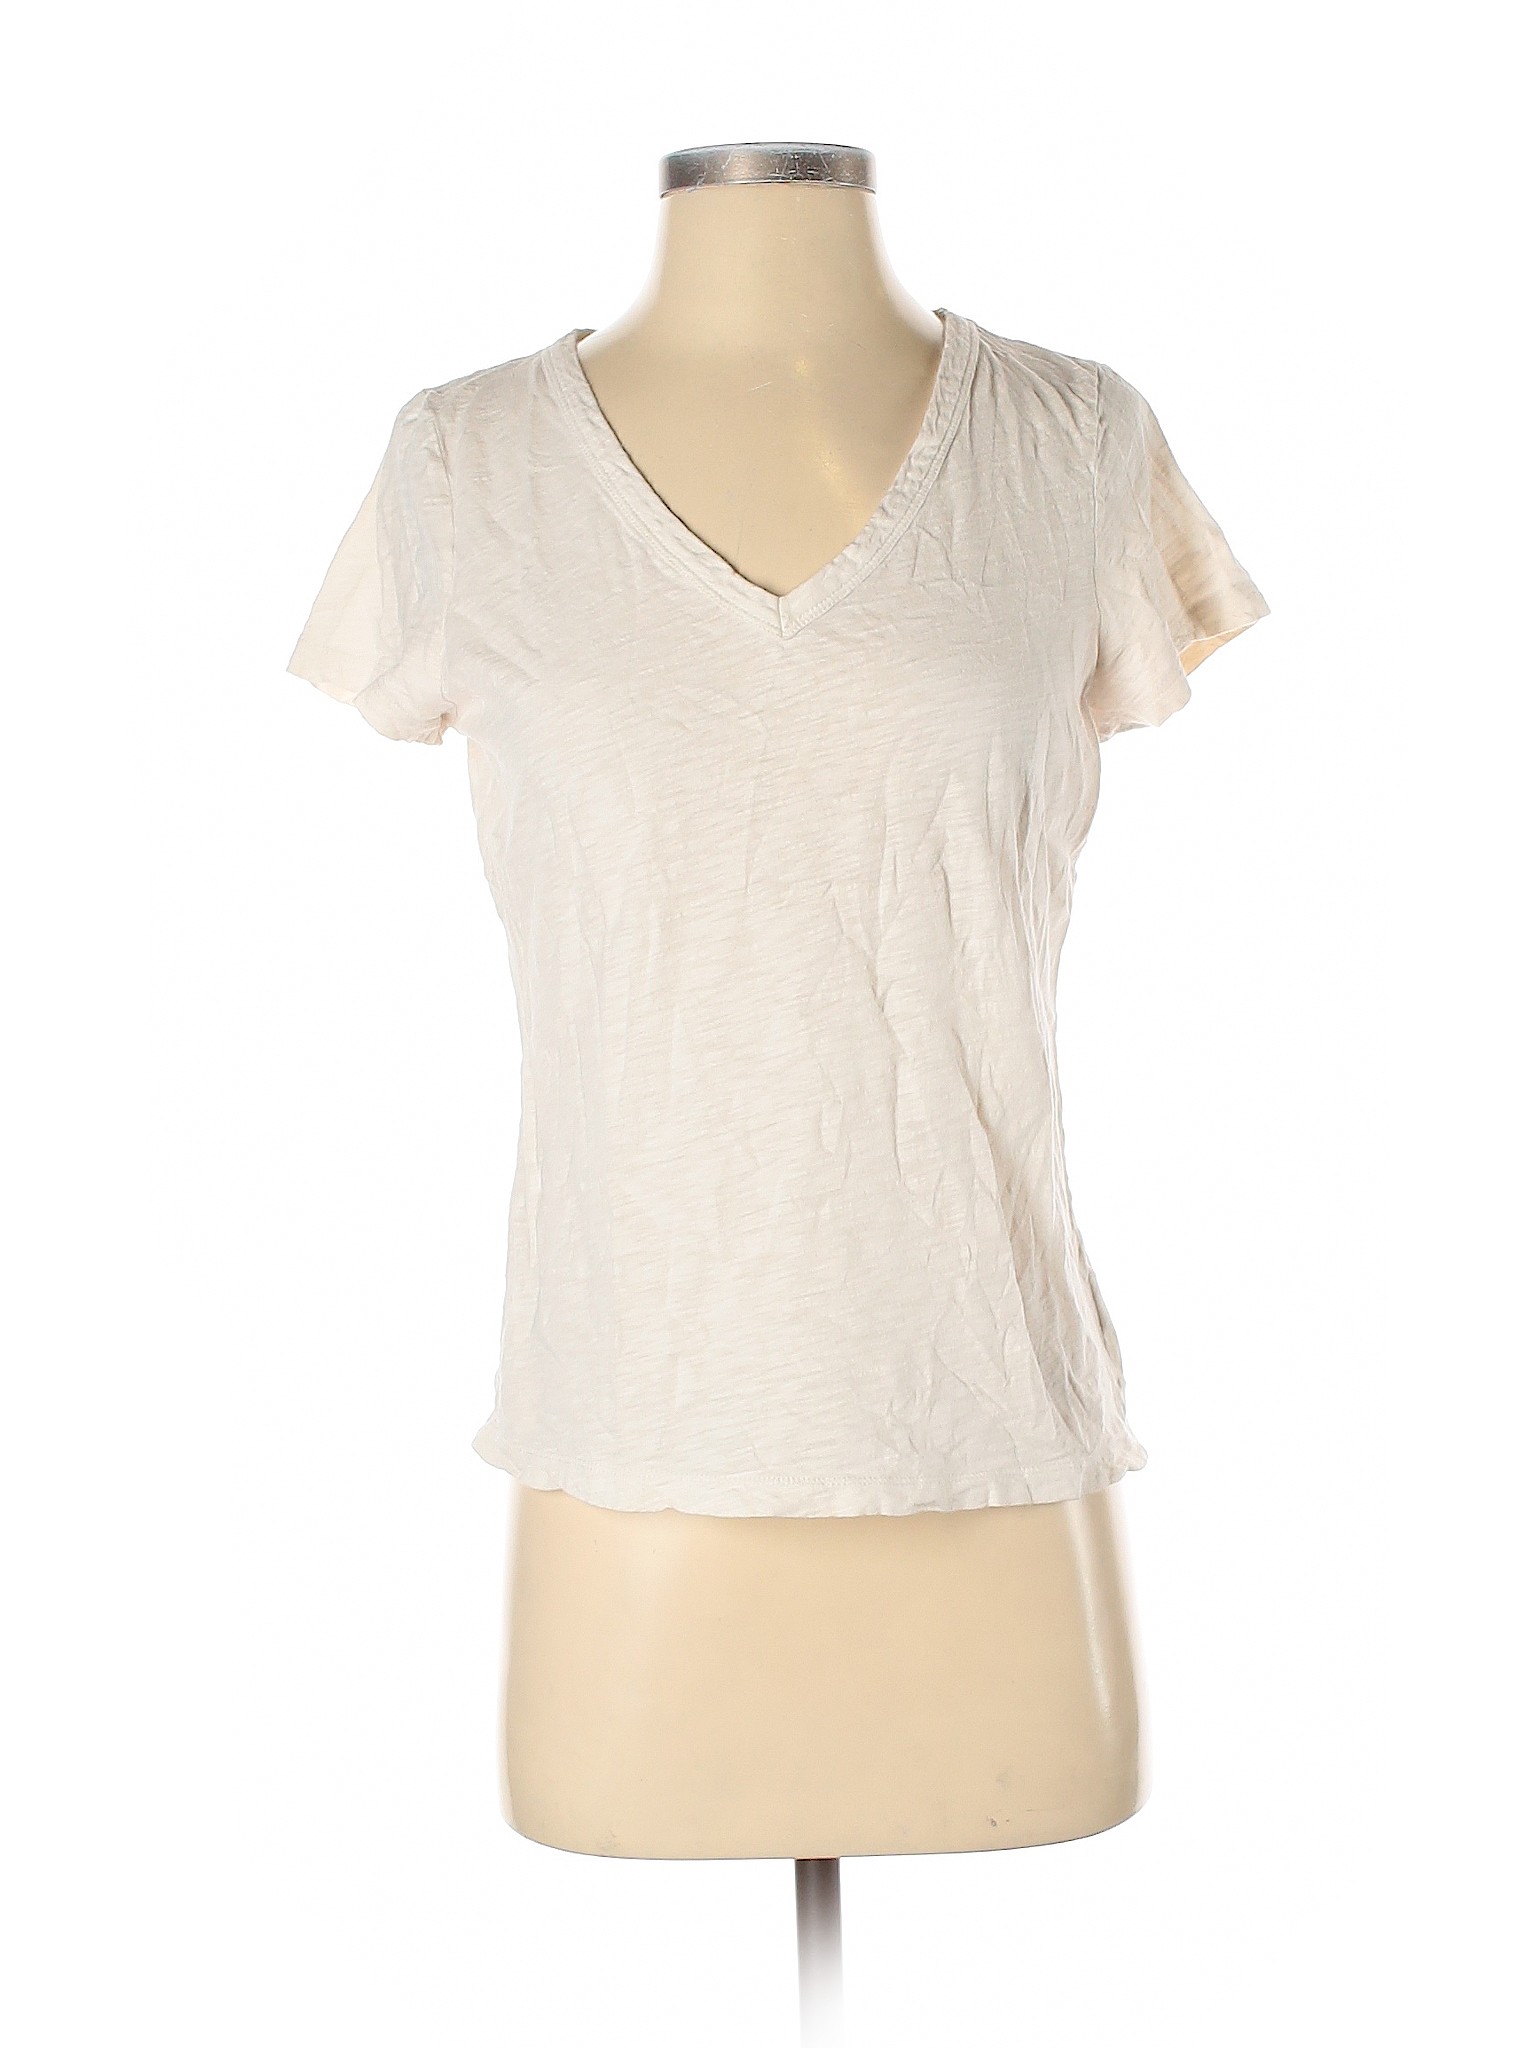 Talbots Women Ivory Short Sleeve T-Shirt S | eBay